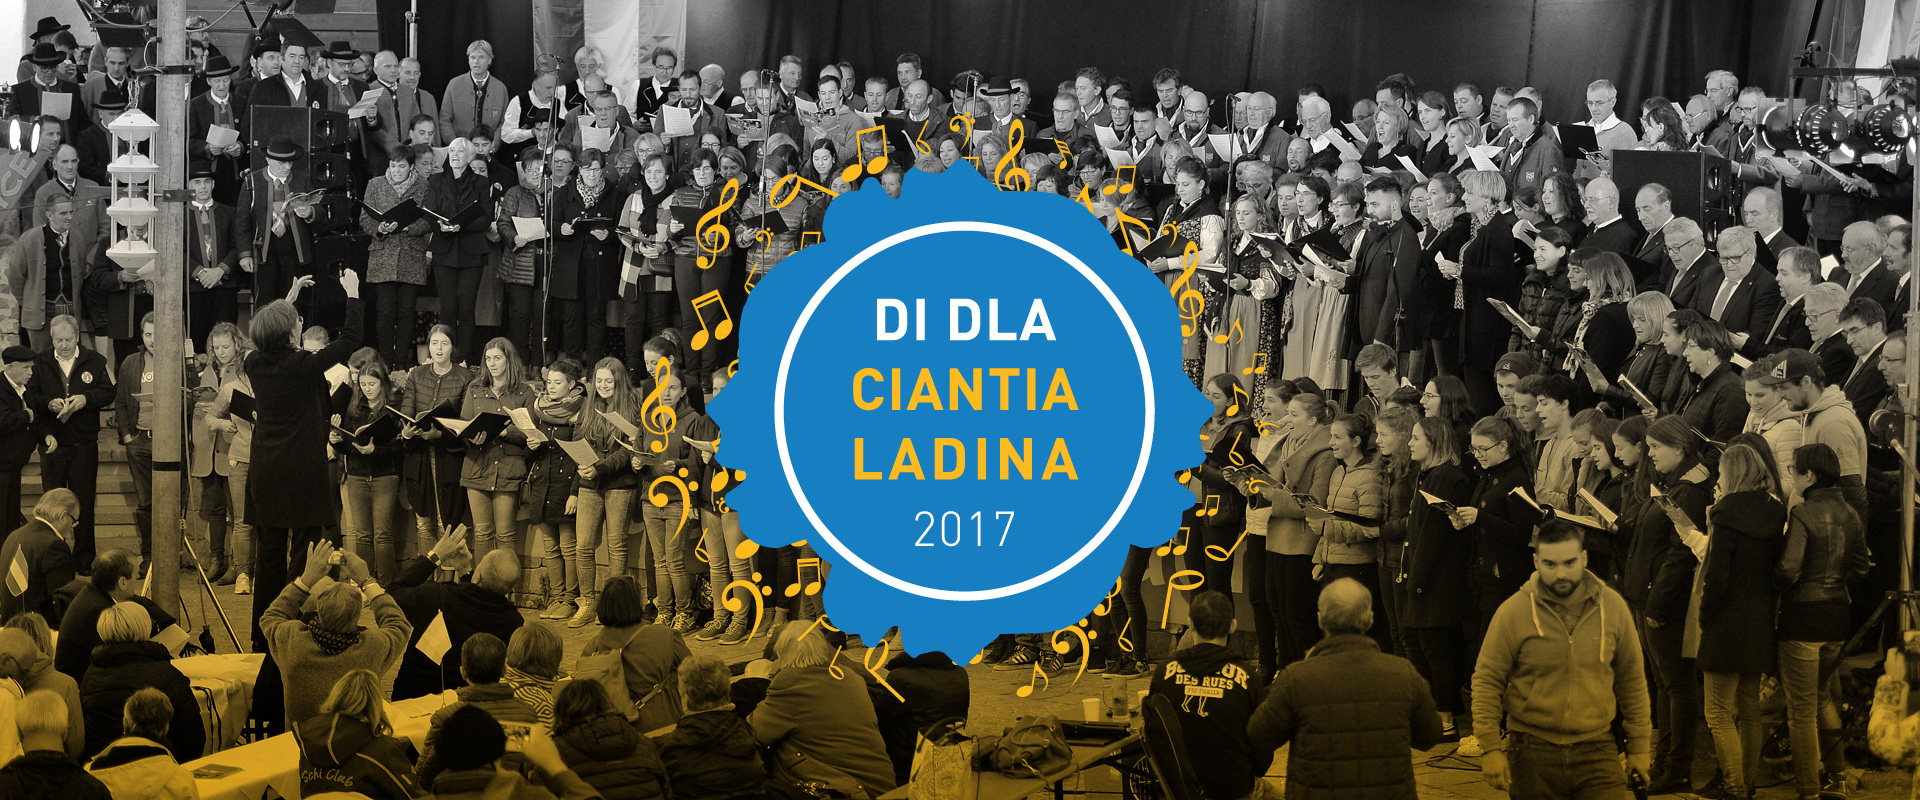 Di dla ciantia Ladina 2017